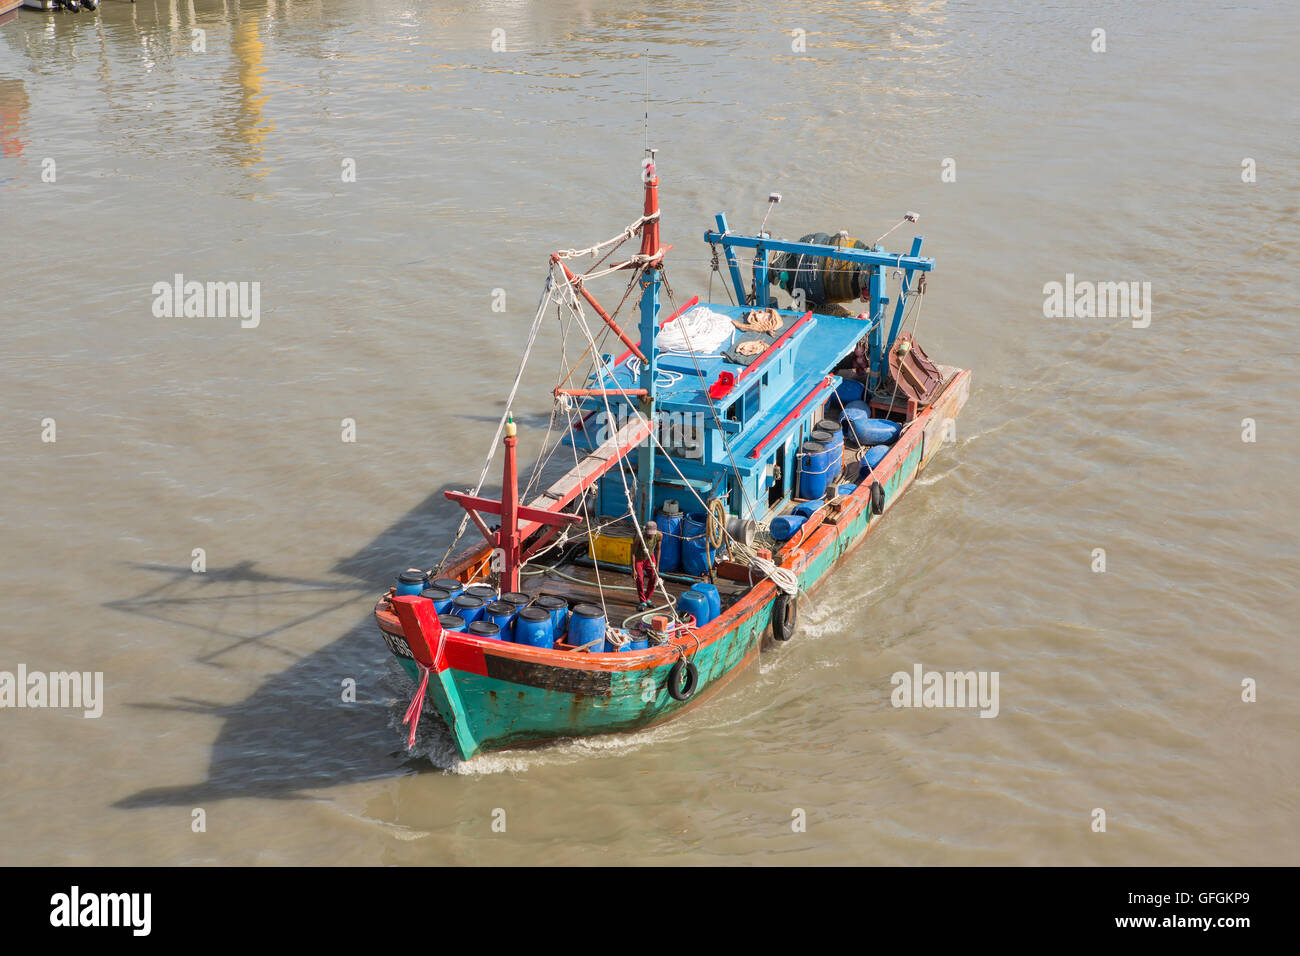 Asiatischen Fischerboot im schlammigen Wasser bei Kuala Perlis in Malaysia. Helles Blau mit roter Litze und abgedeckt im anzugehen. Stockfoto